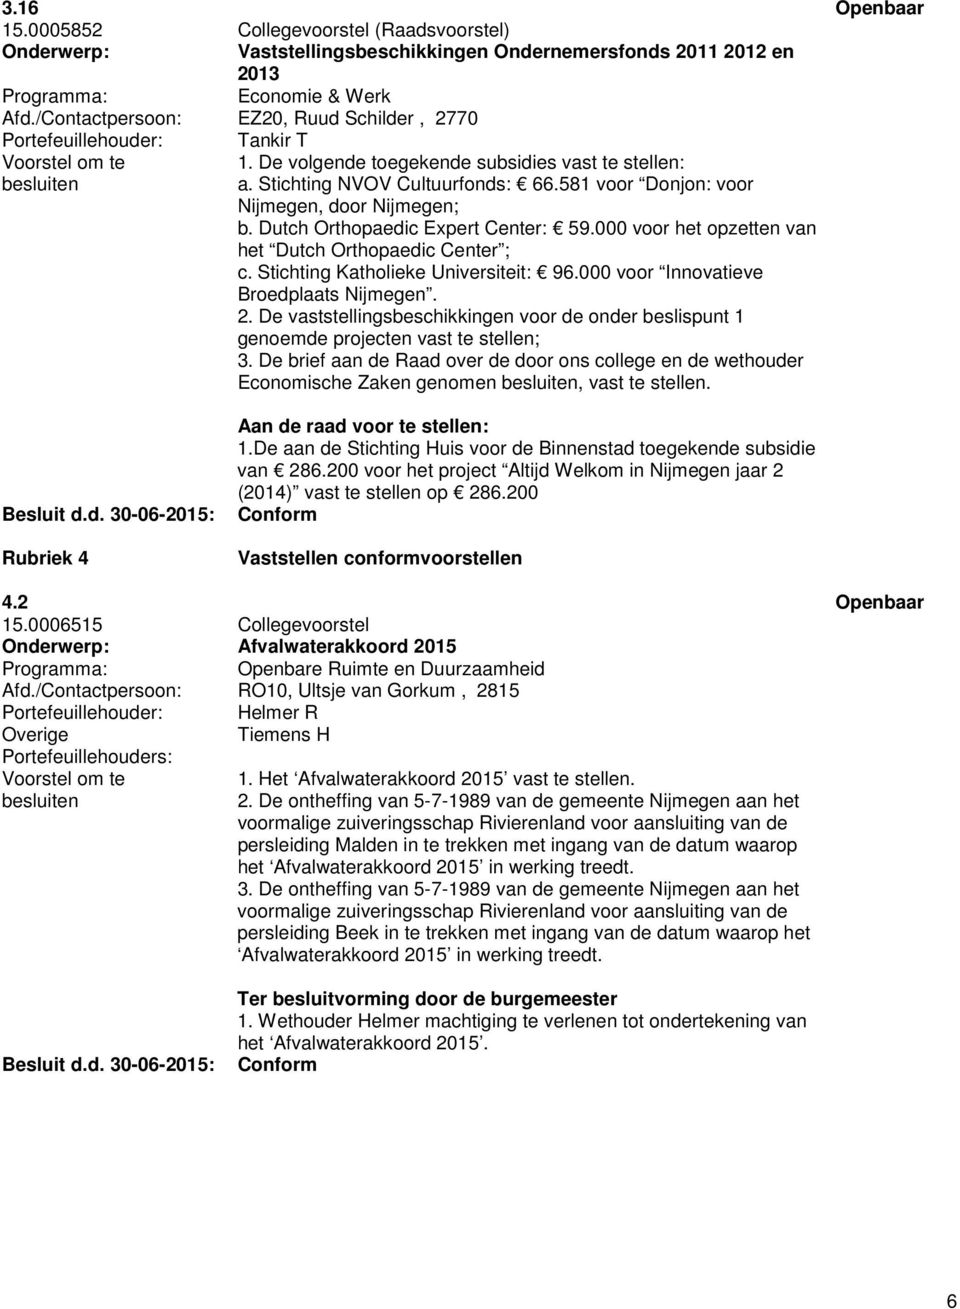 581 voor Donjon: voor Nijmegen, door Nijmegen; b. Dutch Orthopaedic Expert Center: 59.000 voor het opzetten van het Dutch Orthopaedic Center ; c. Stichting Katholieke Universiteit: 96.